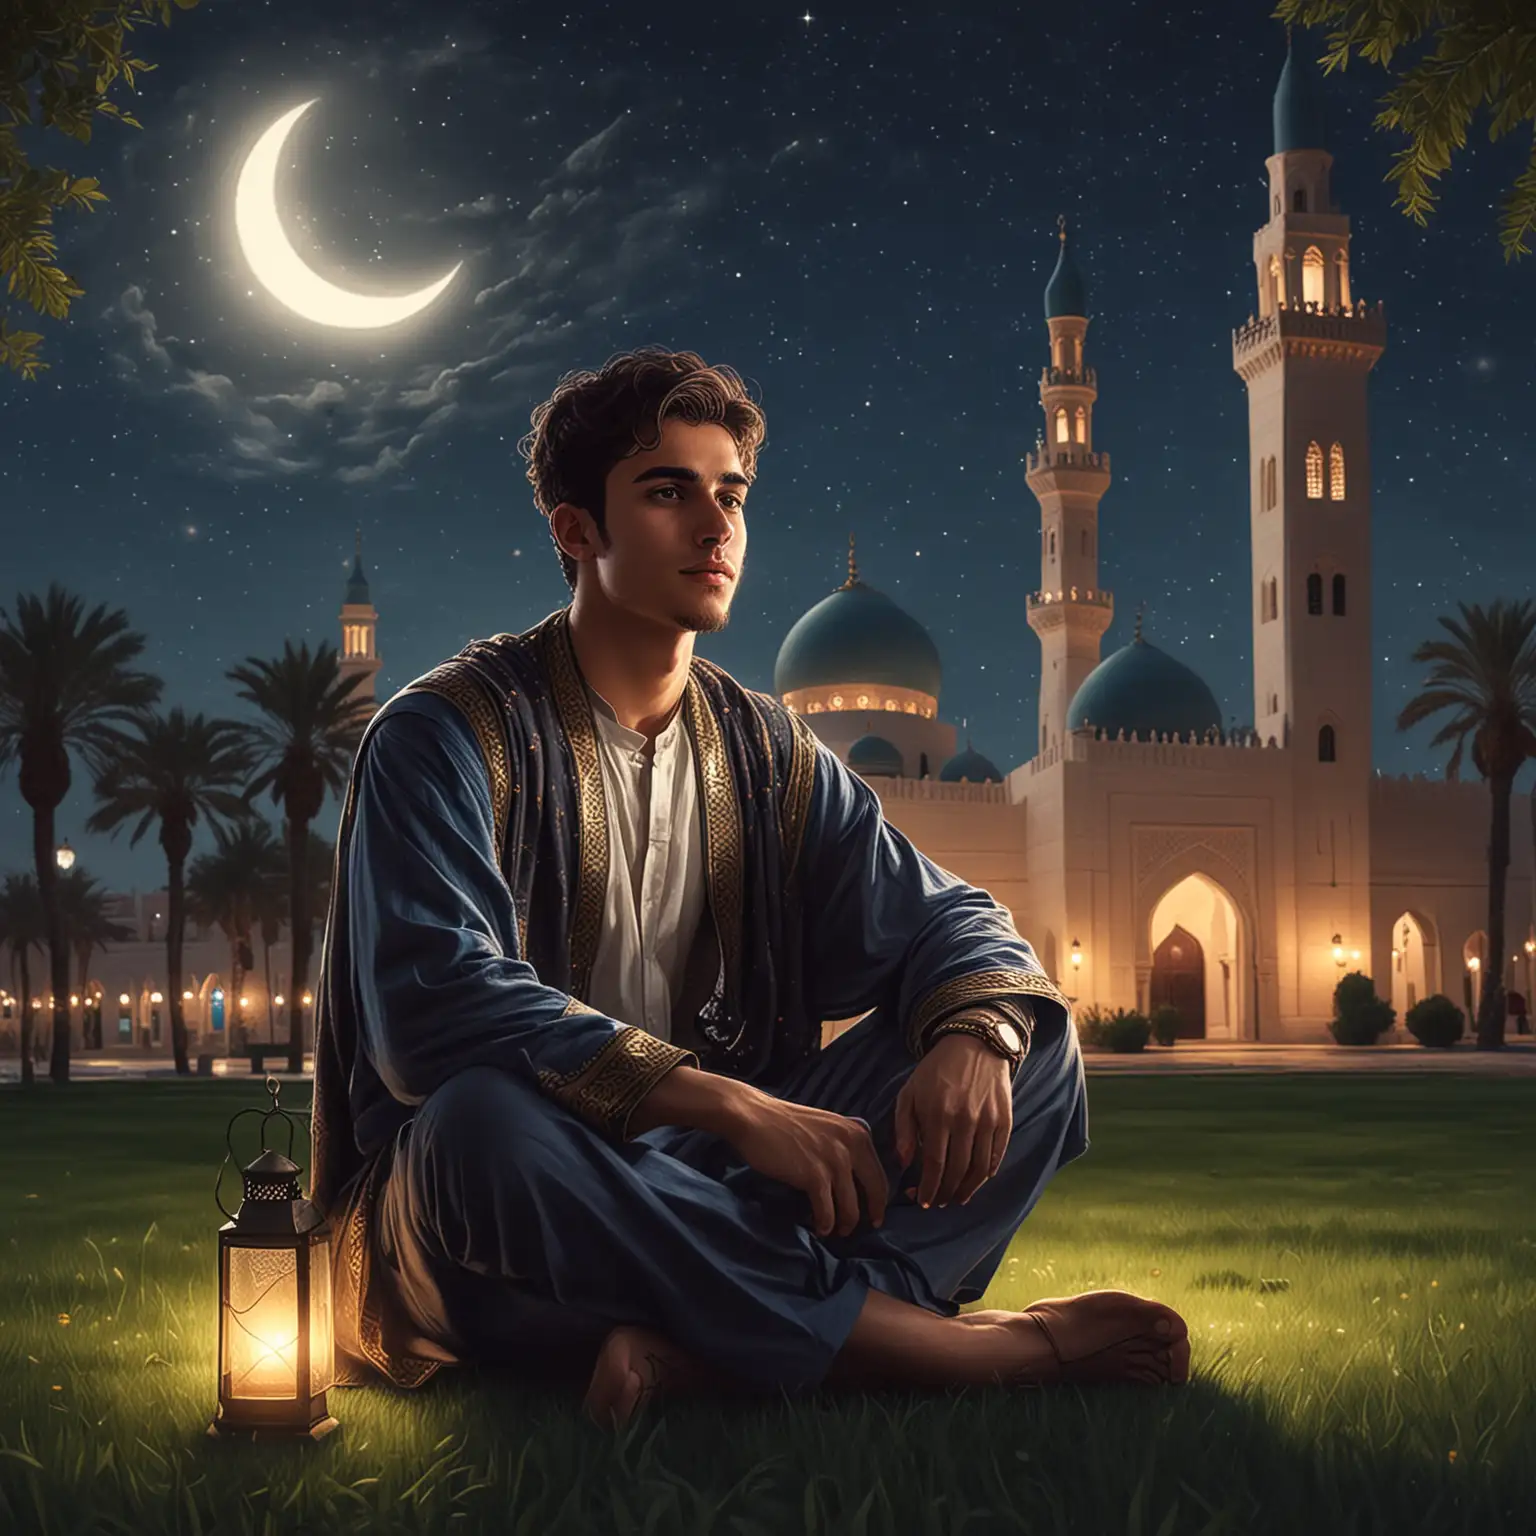  أرسم شاب بلباس عربي جالس على العشب فوق سجادة امام المسجد بالليل والاضواء و هلال و مصباح صغير مع أخد ملامح وجهي من حسابي الفيسبوك
